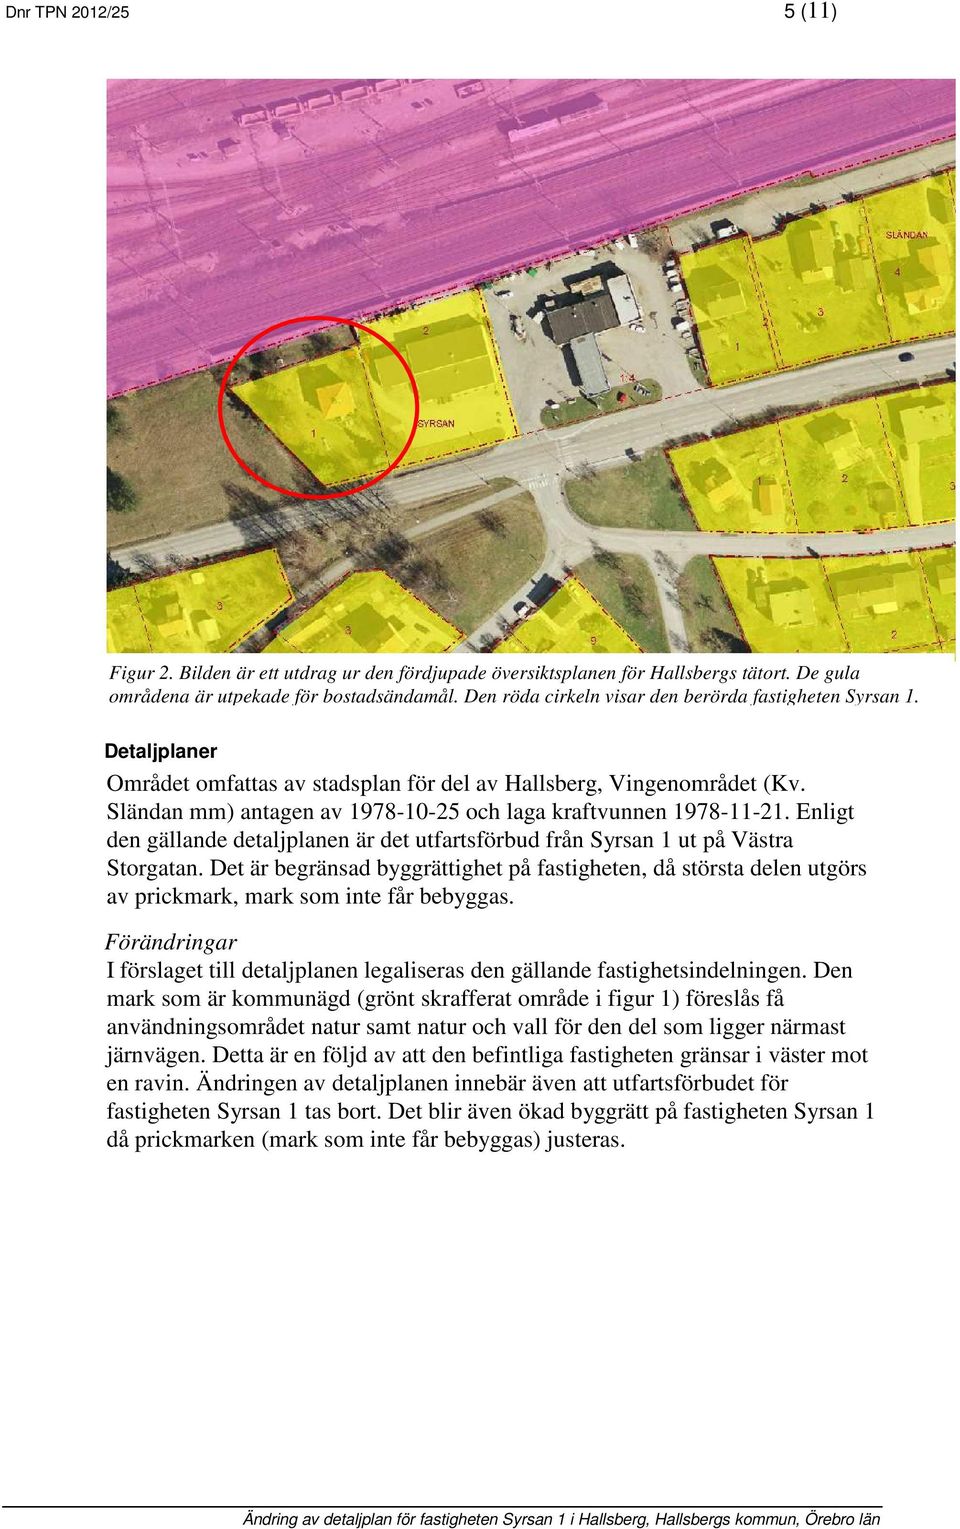 Sländan mm) antagen av 1978-10-25 och laga kraftvunnen 1978-11-21. Enligt den gällande detaljplanen är det utfartsförbud från Syrsan 1 ut på Västra Storgatan.